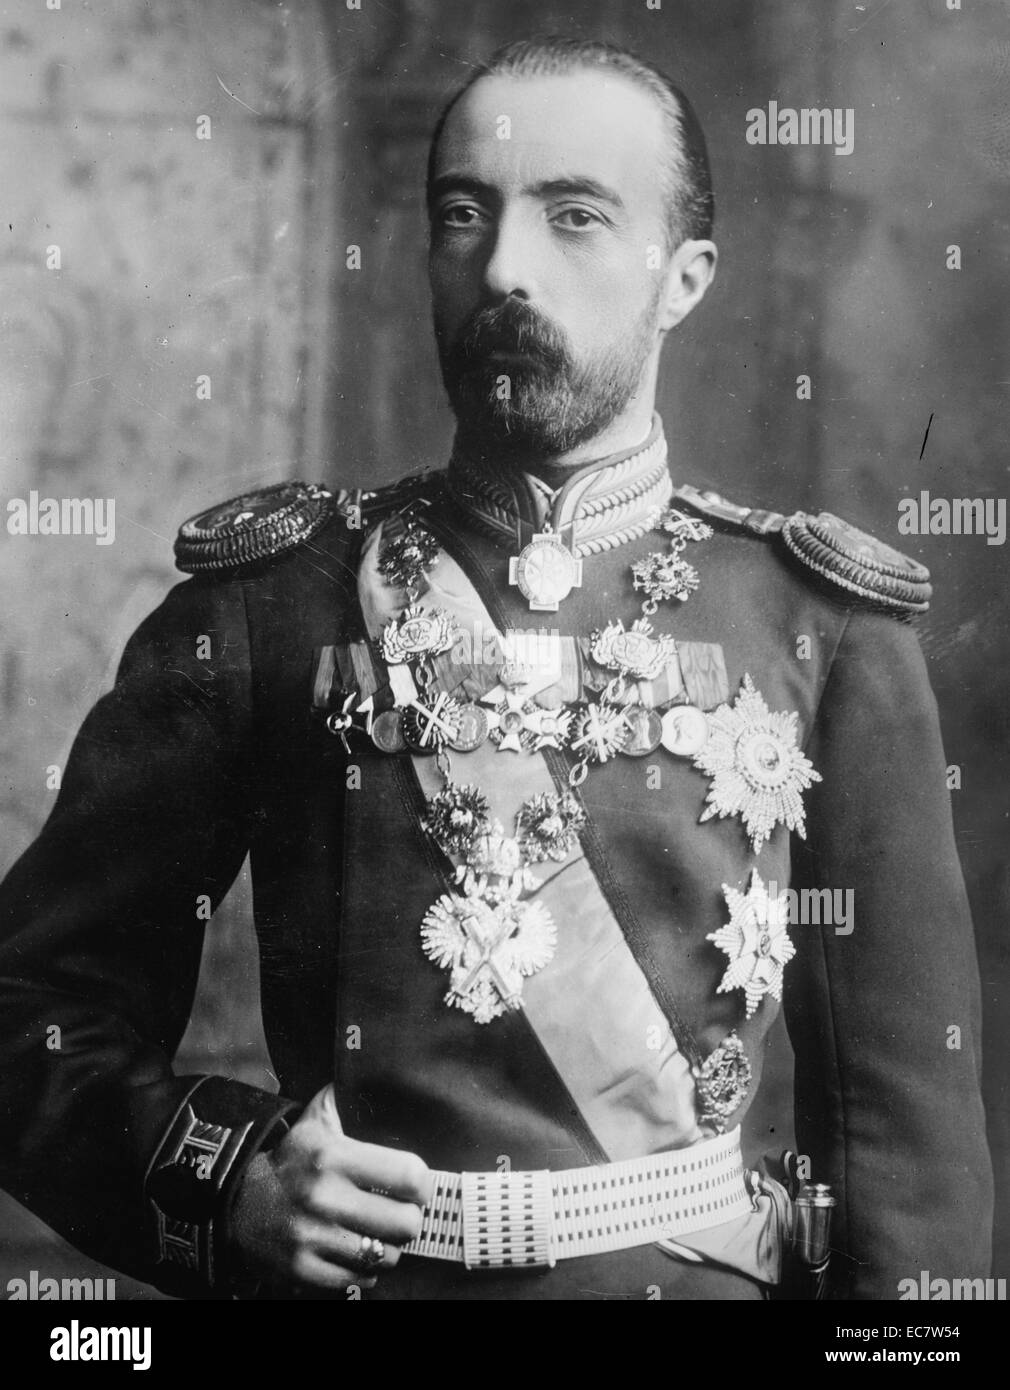 Portrait von Großherzog Michael Alexandrowitsch Russlands. Er war der jüngste Sohn von Kaiser Alexander III. von Russland. Um 1910 datiert. Stockfoto